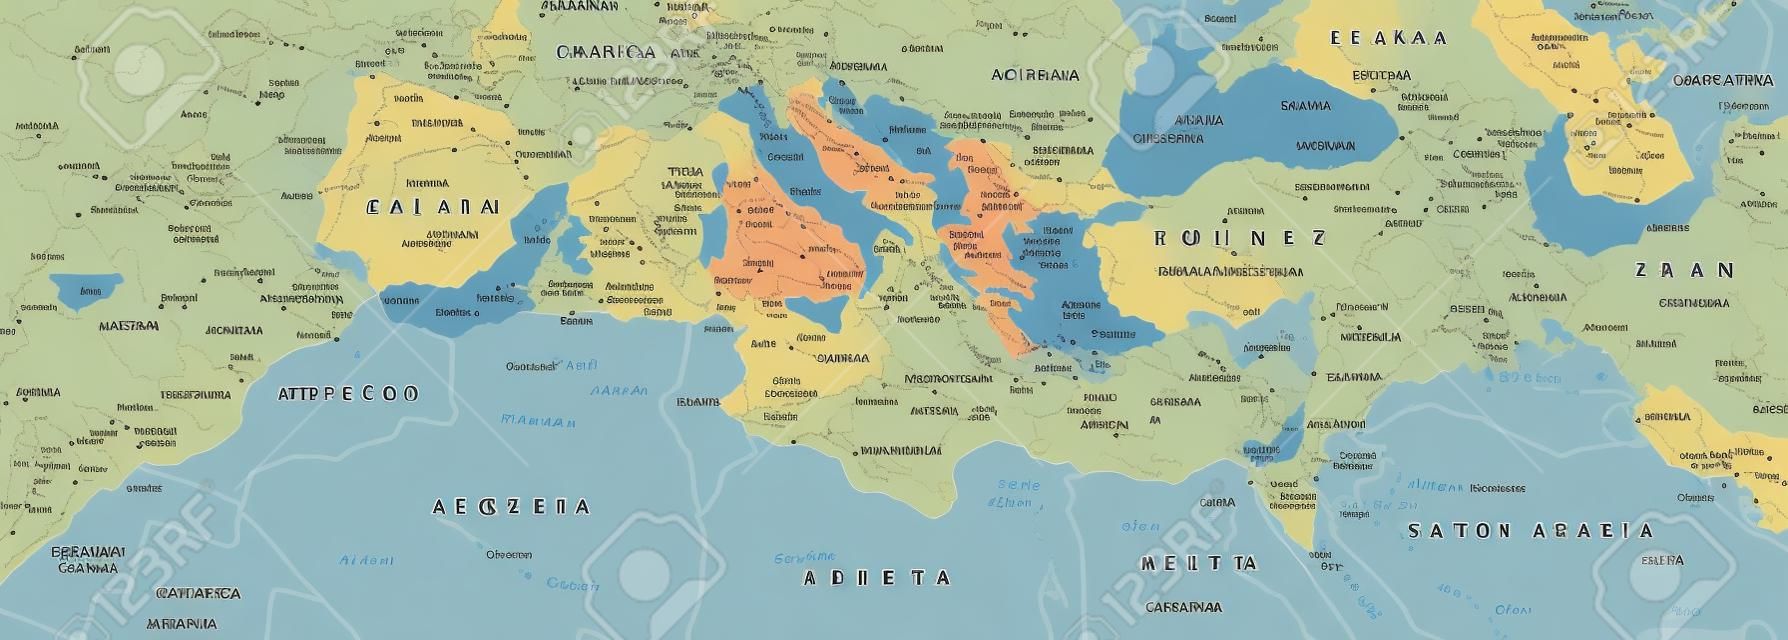 地中海盆地政治地图南欧北非和近东与首都国界河流湖泊英语标记和缩放插图